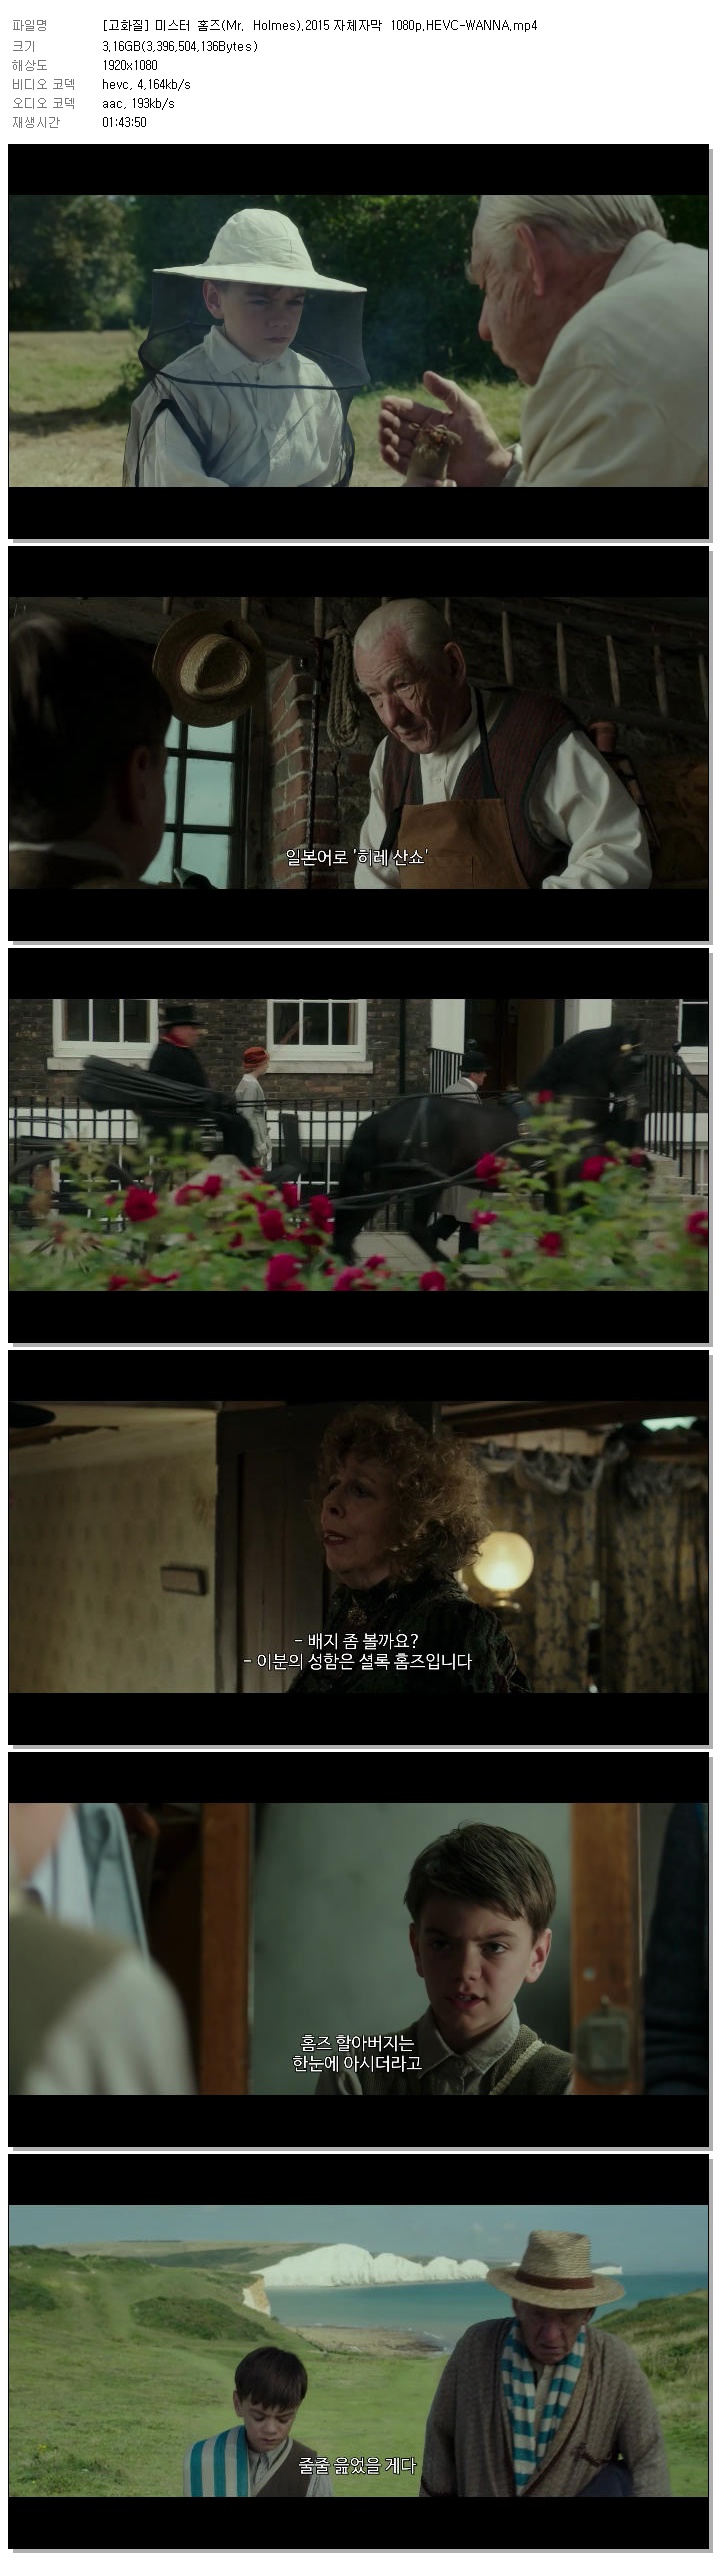 [고화질] 미스터 홈즈(Mr. Holmes).2015 자체자막 1080p.HEVC-WANNA